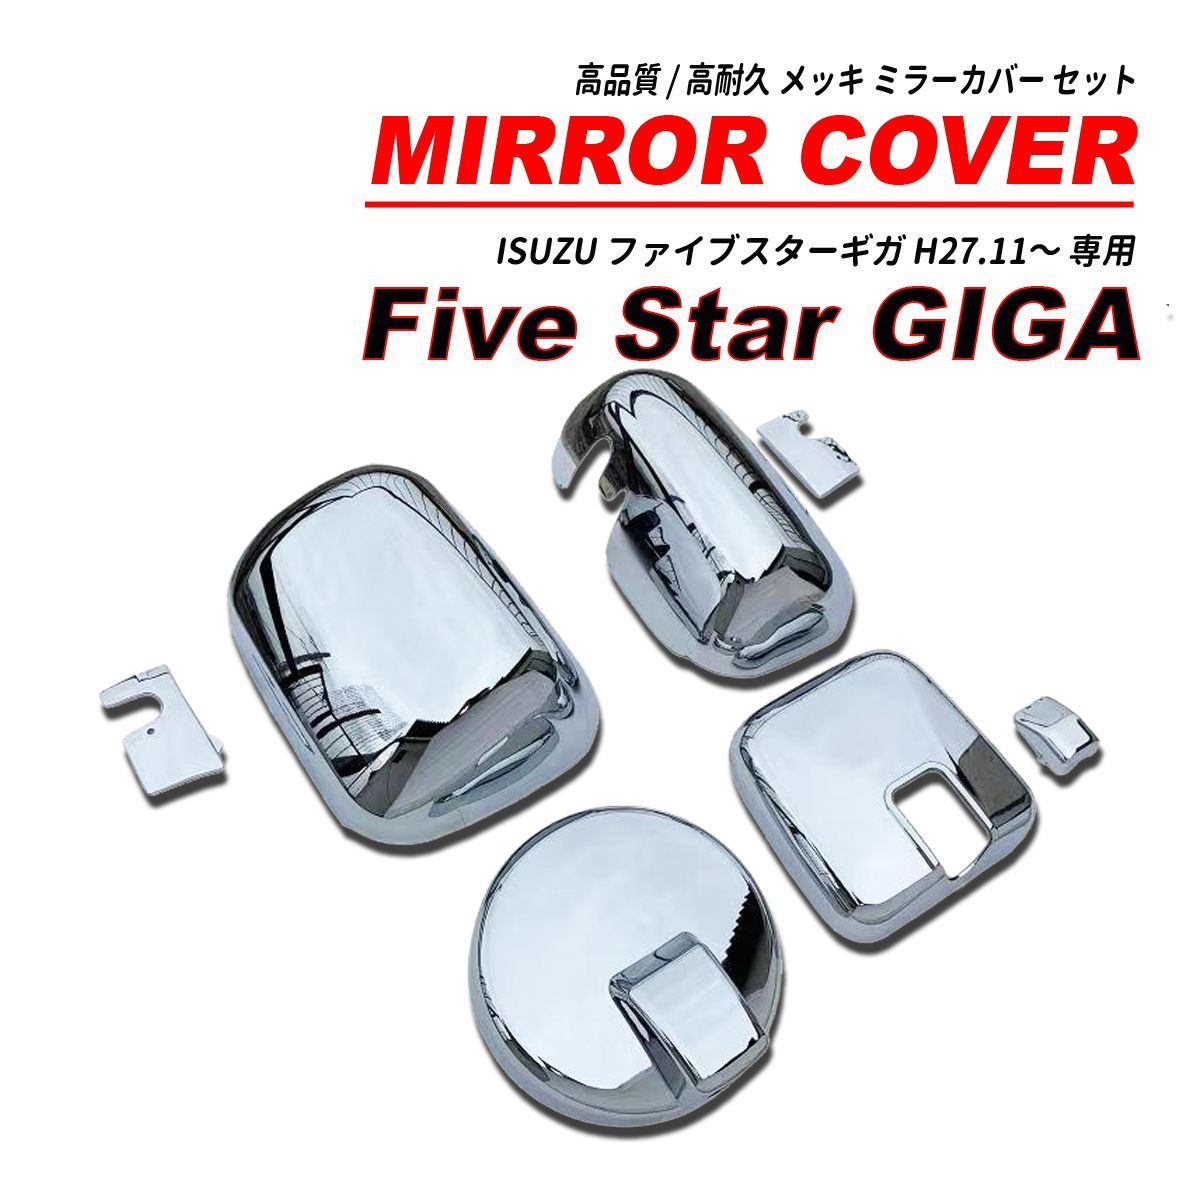 ファイブスター ギガ / NEW ギガ 大型 鏡面 メッキミラー カバー 